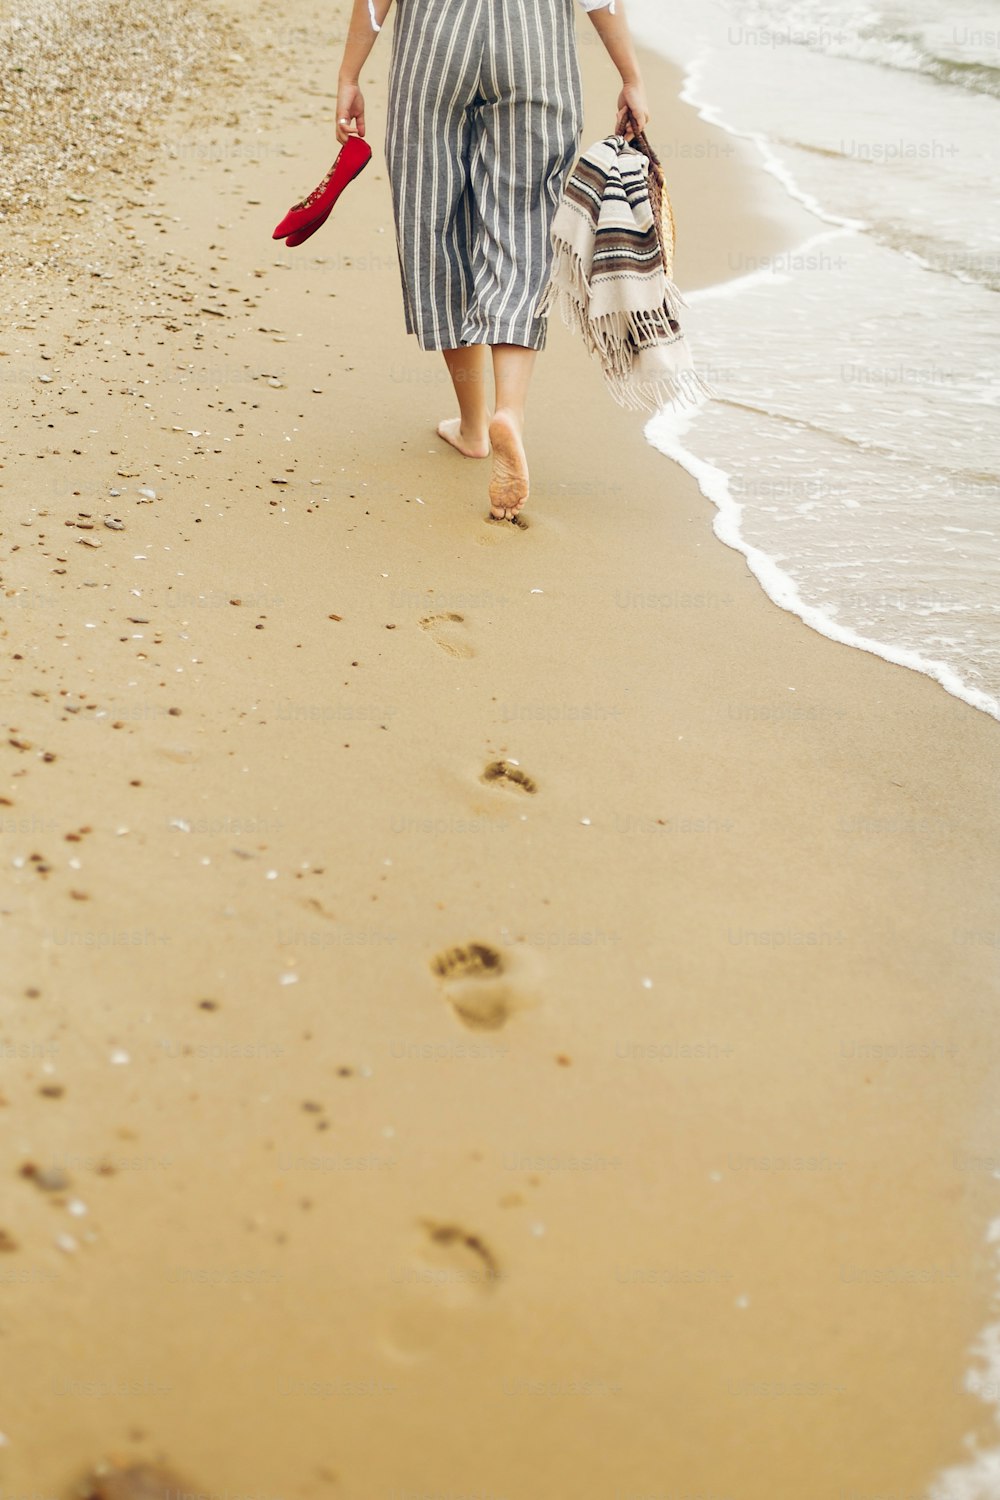 Frau läuft barfuß am Strand, Rückenansicht der Beine. Junges Mädchen entspannt sich am Sandstrand, spazieren mit Schuhen und Tasche in den Händen. Sommerurlaubskonzept